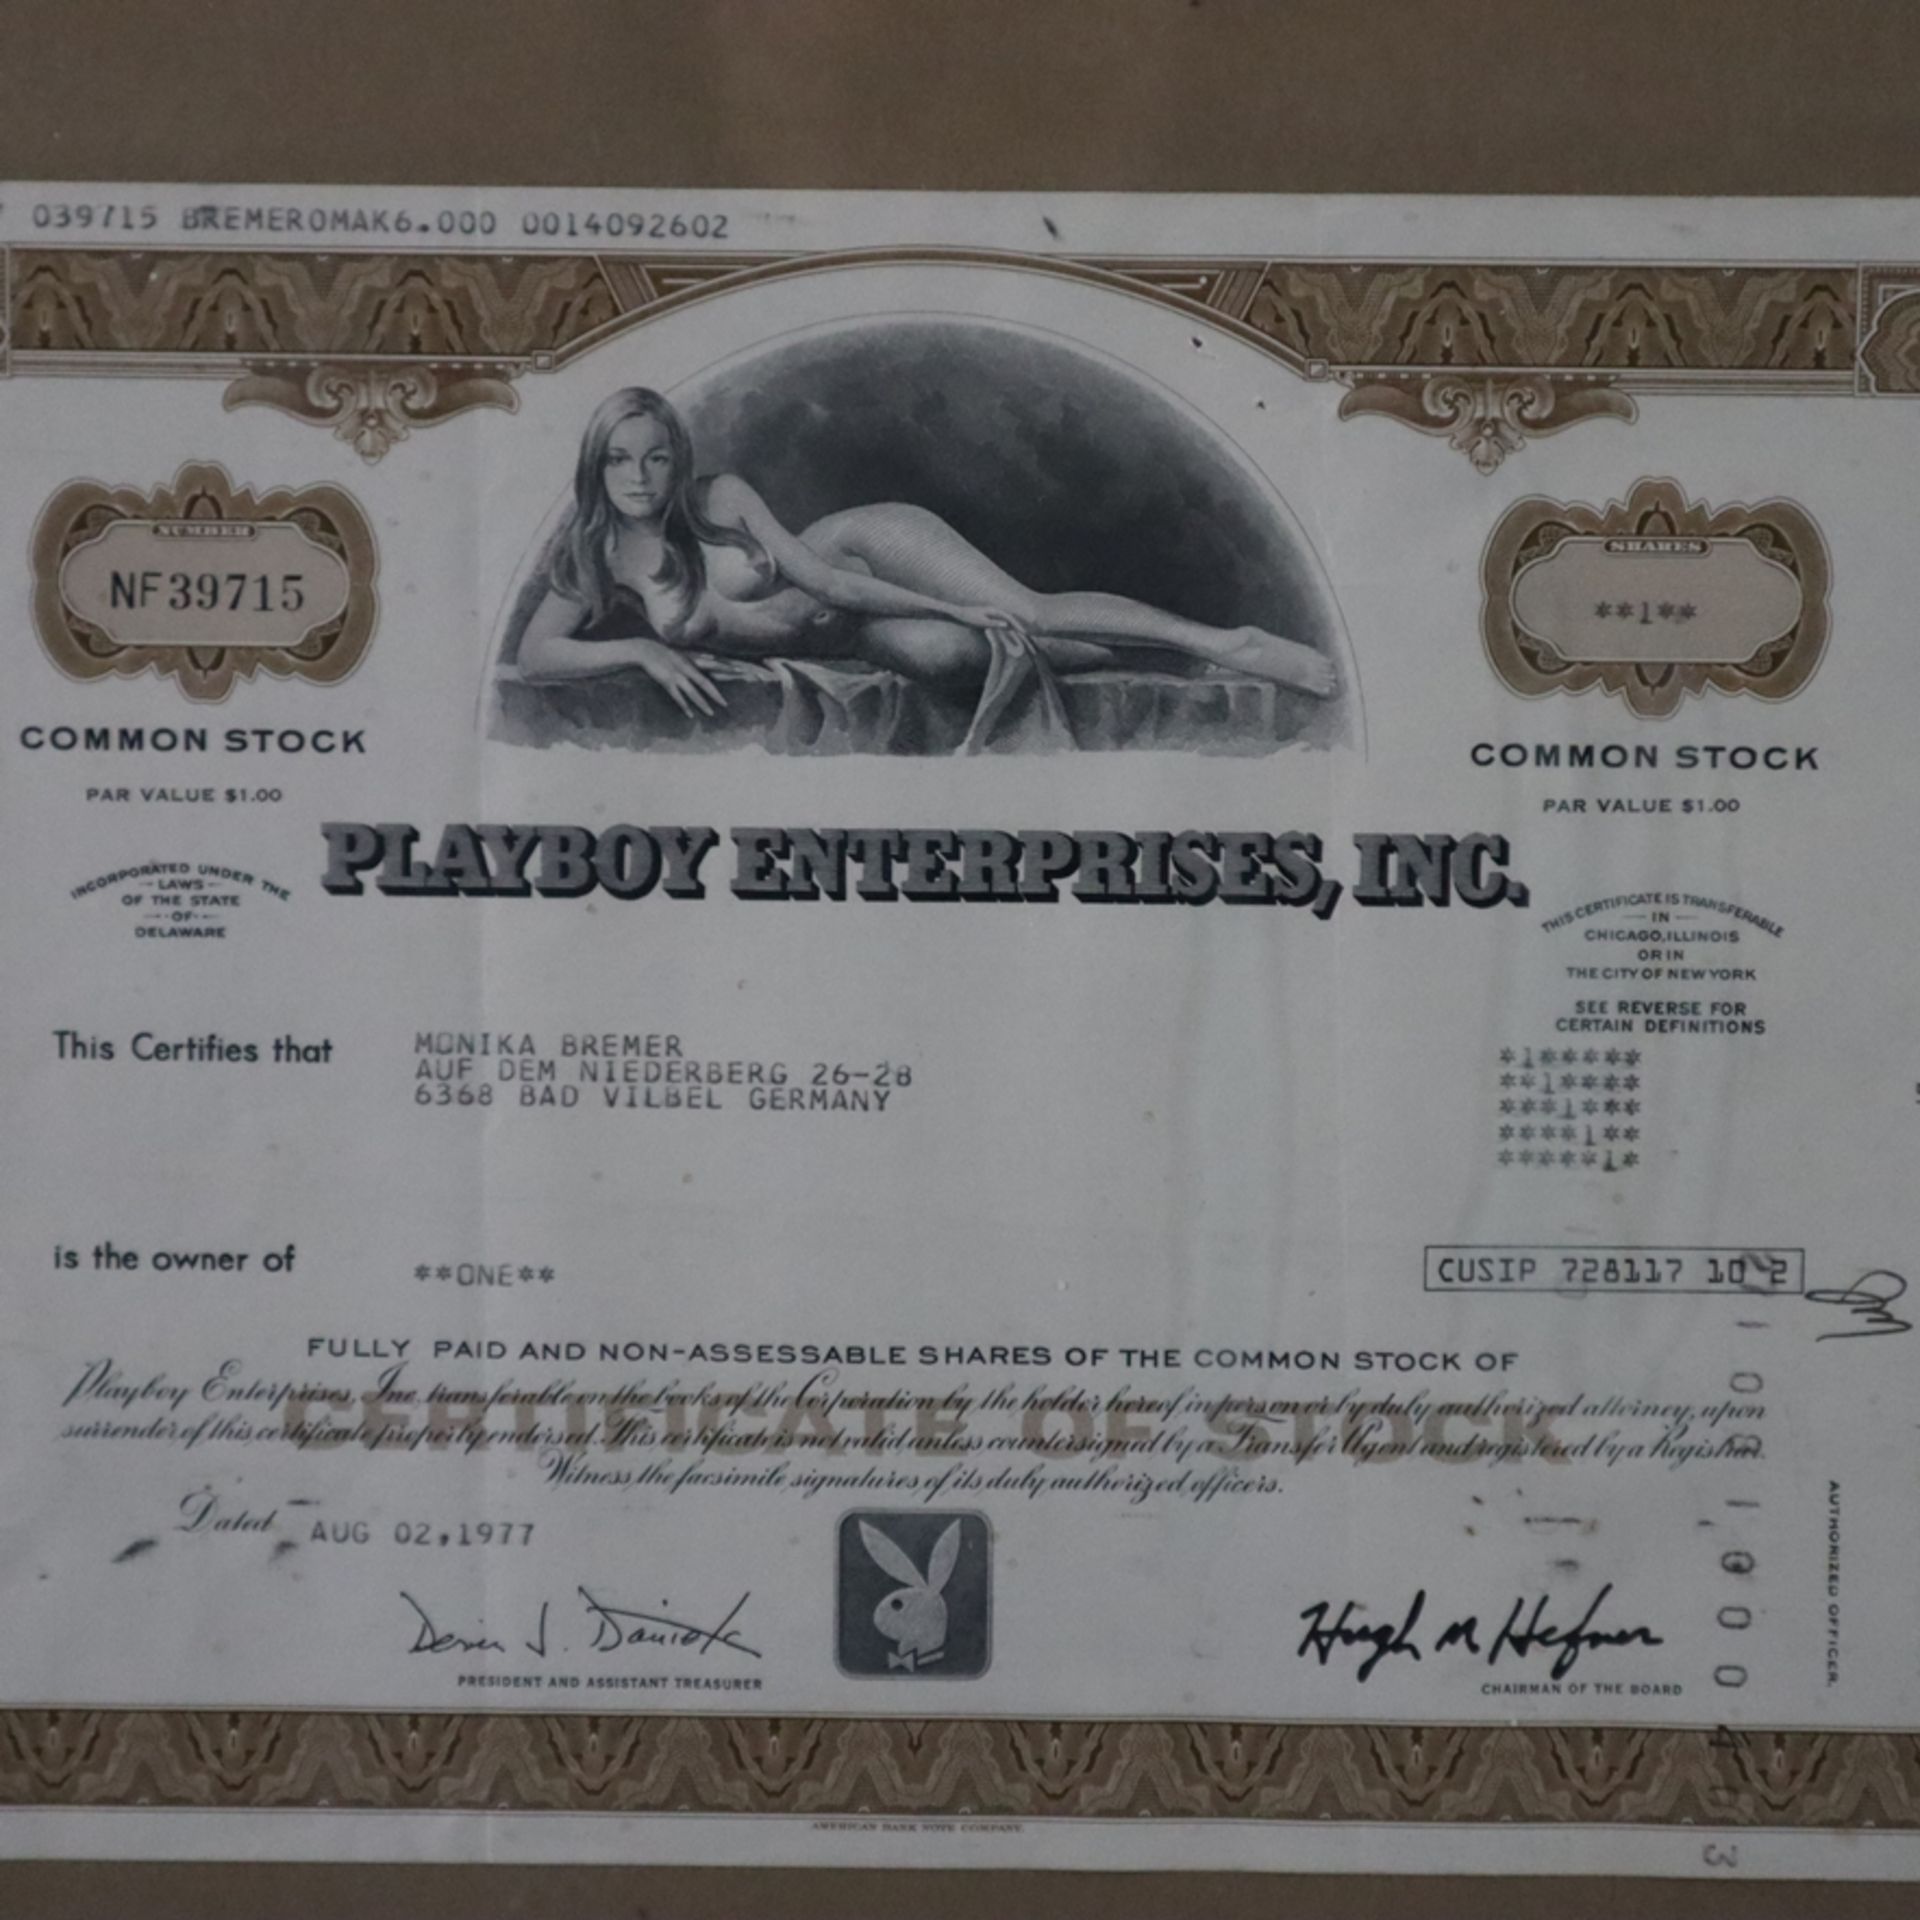 Wertpapier - Playboy Enterprises, Inc. No. NF 39715, datiert 1977, Common Stock, Par Value $1.00, m - Image 3 of 6